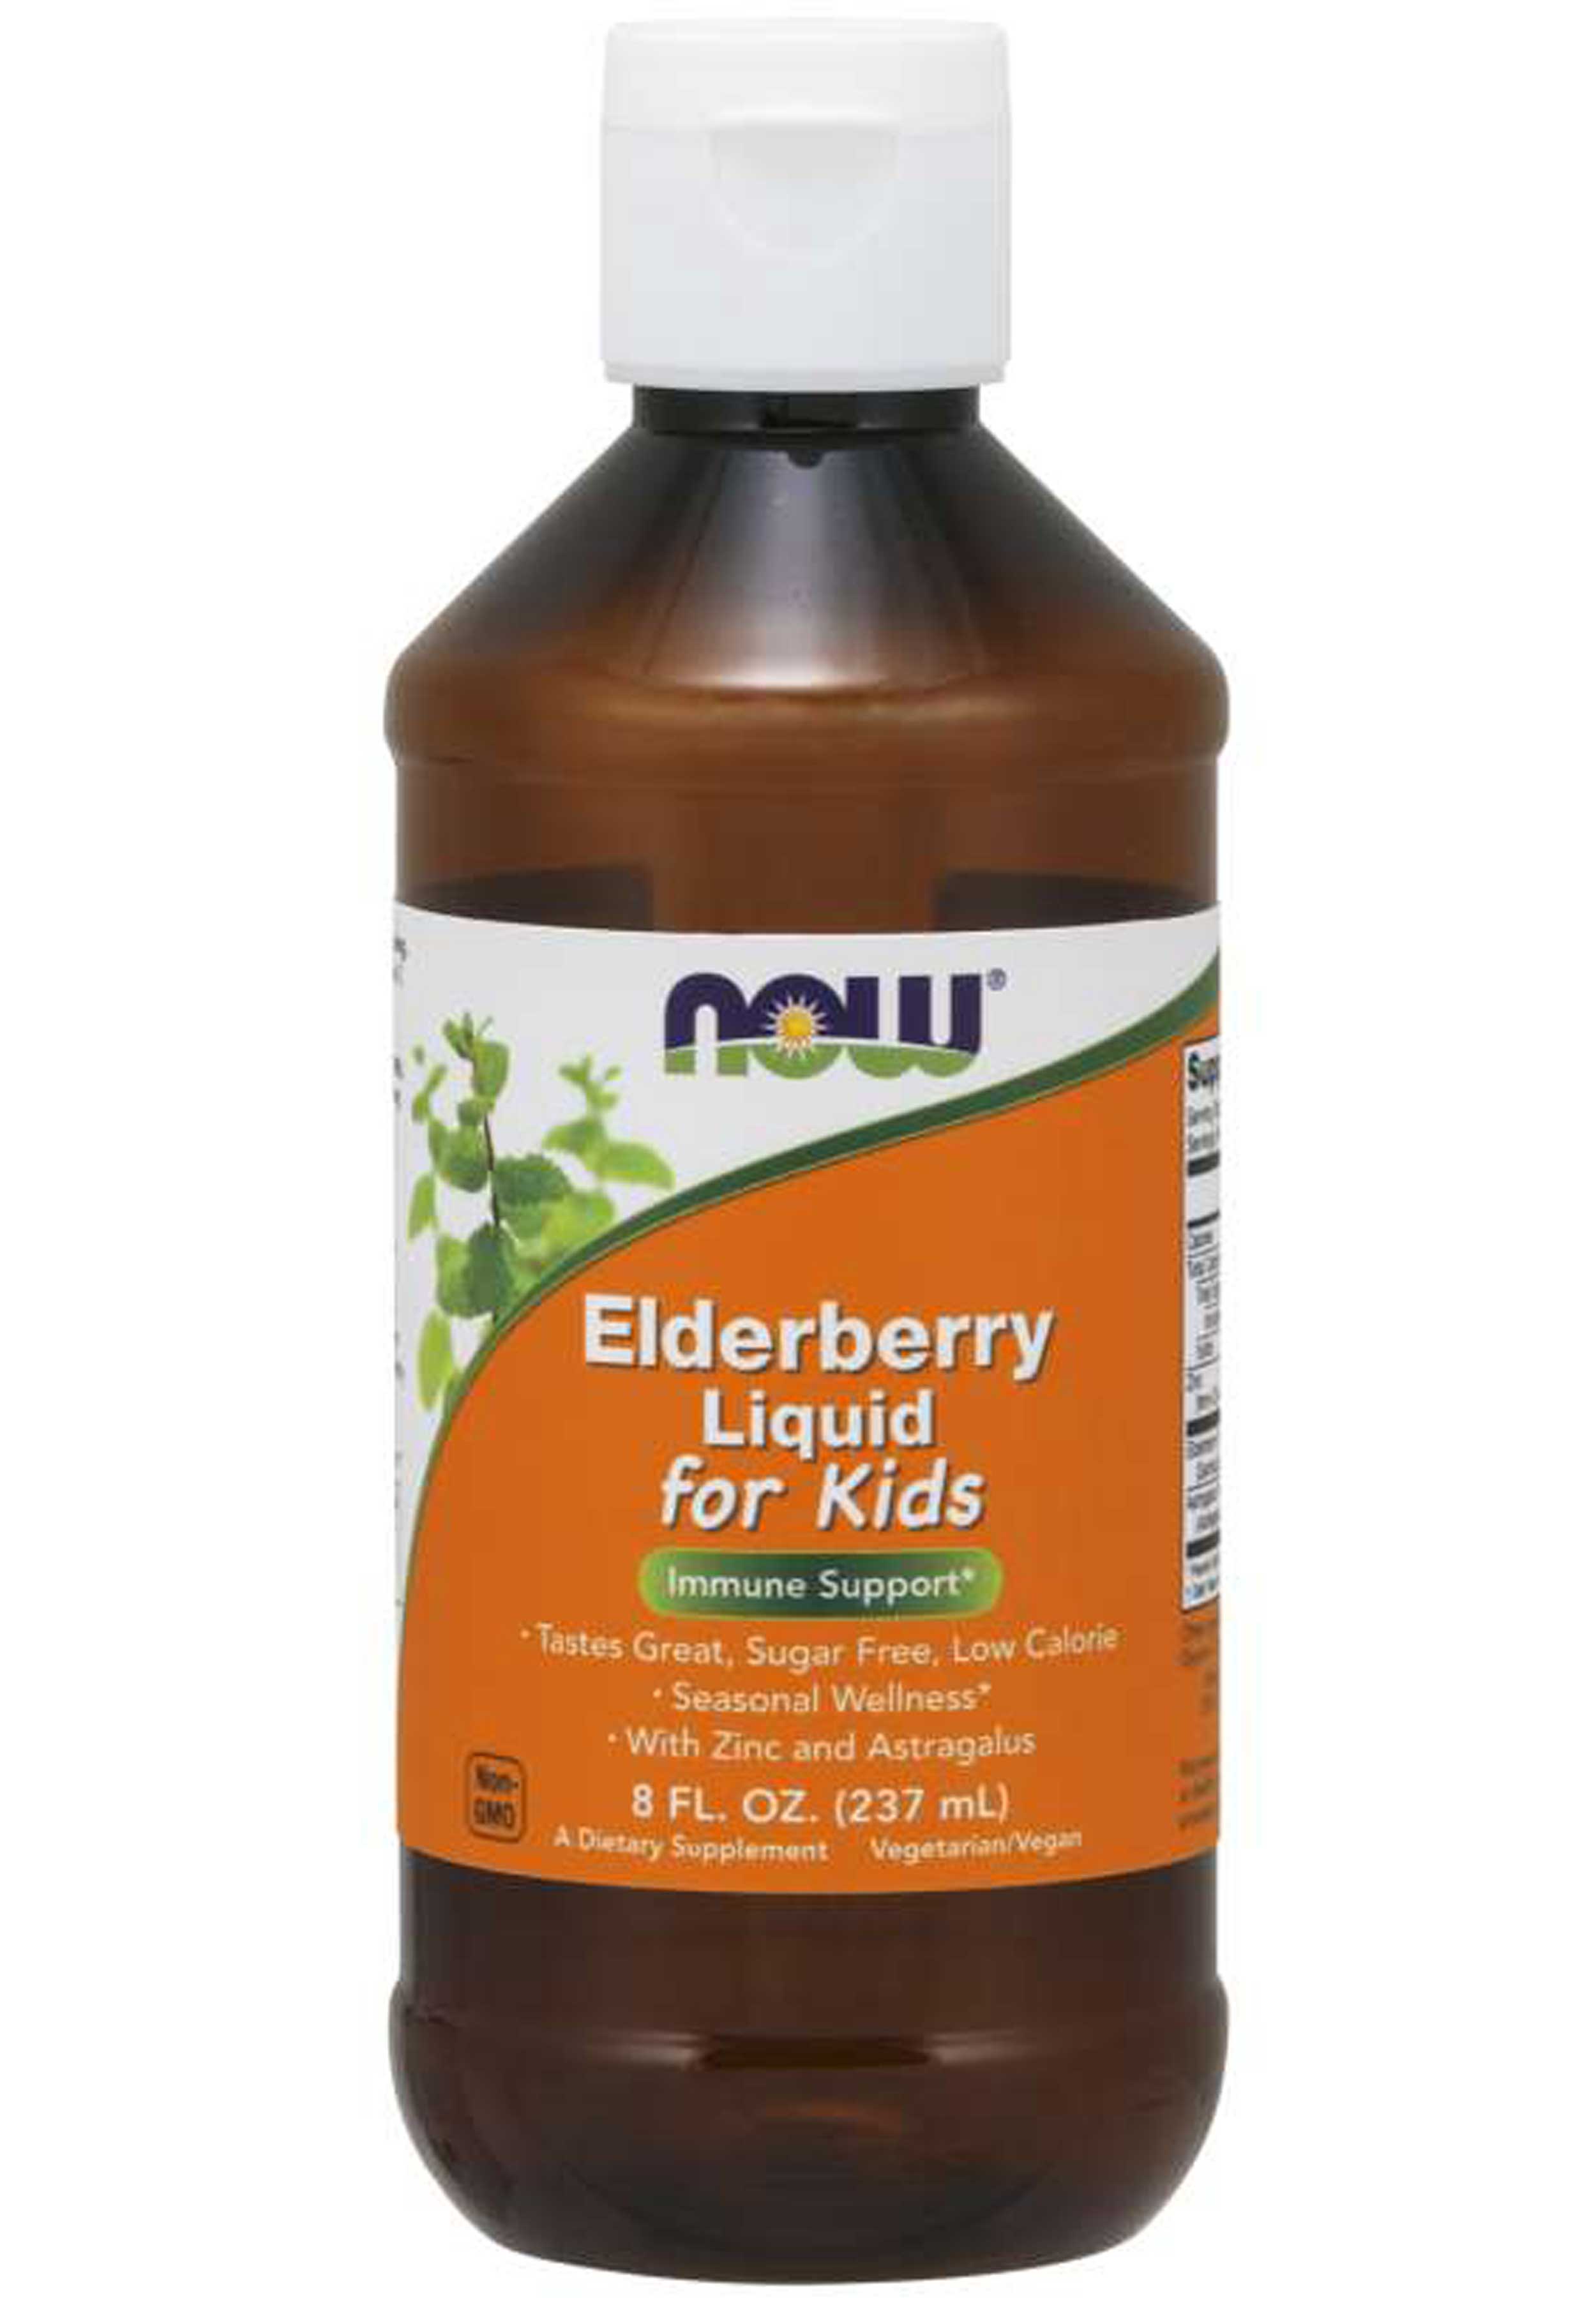 NOW Elderberry Liquid for Kids